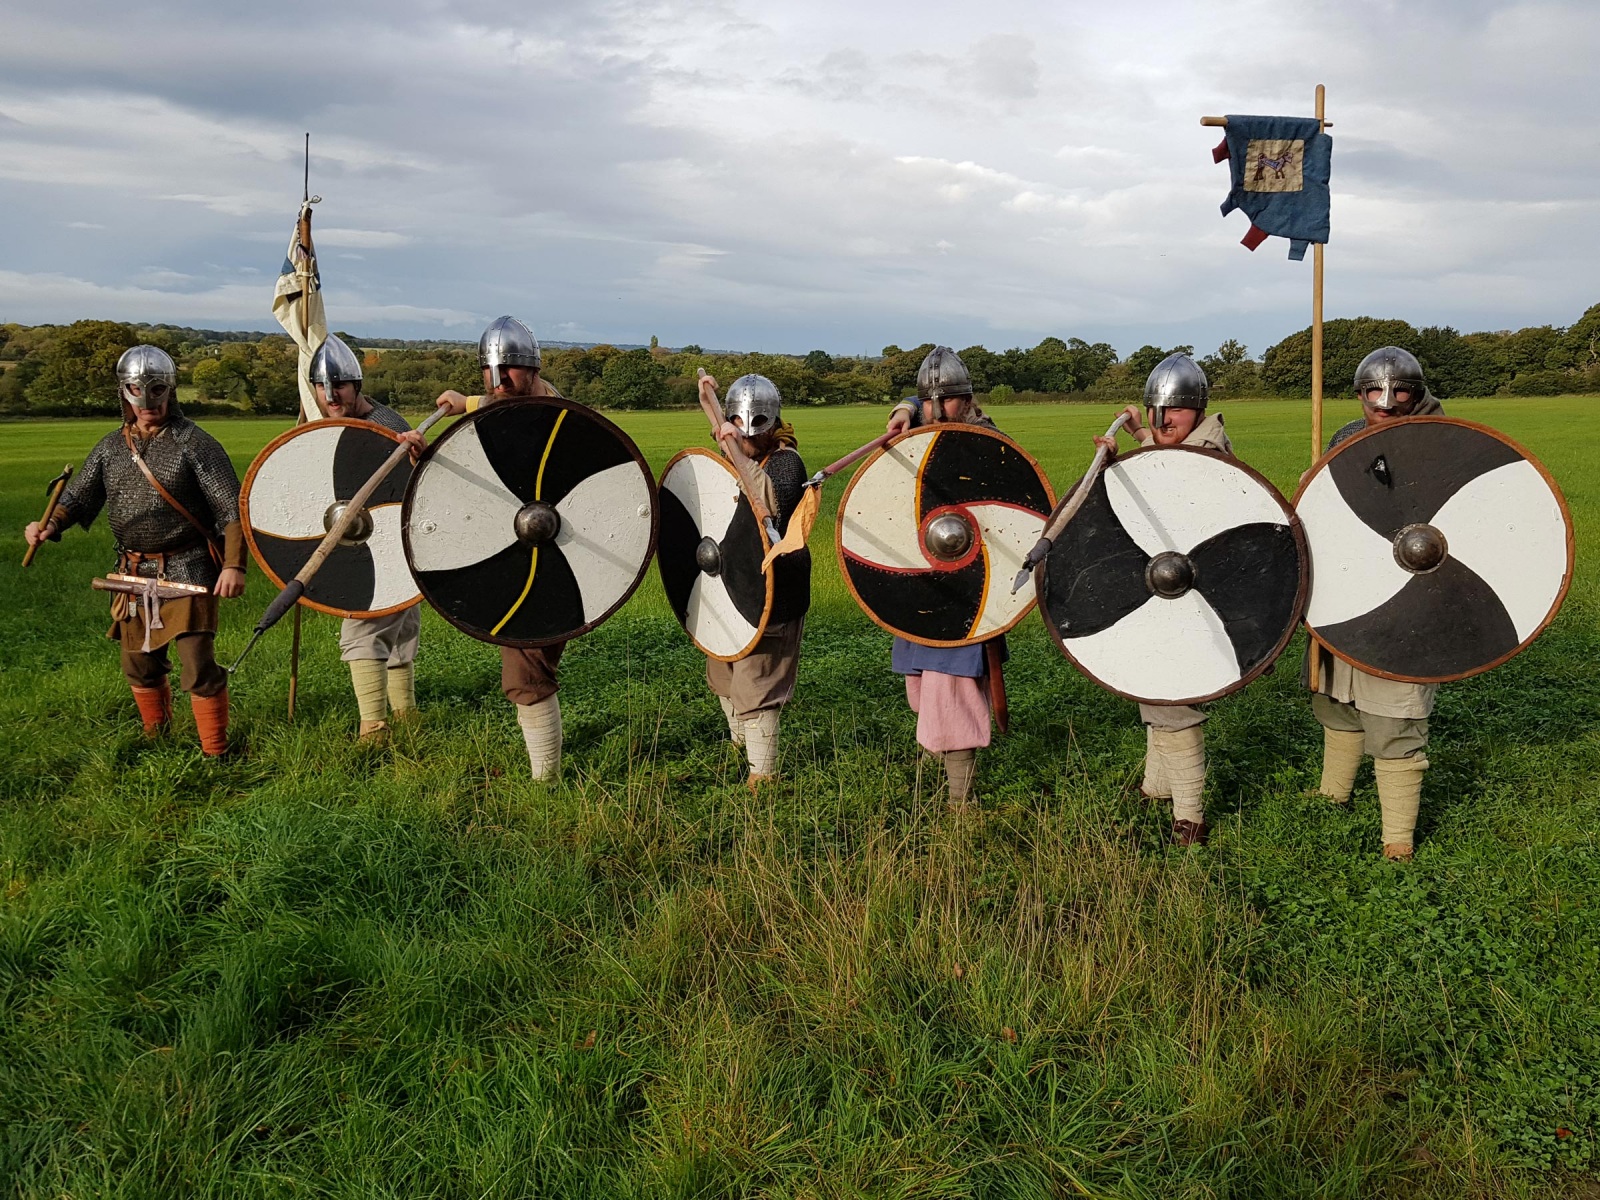 The Vikings of Wirhalh Skip Felagr